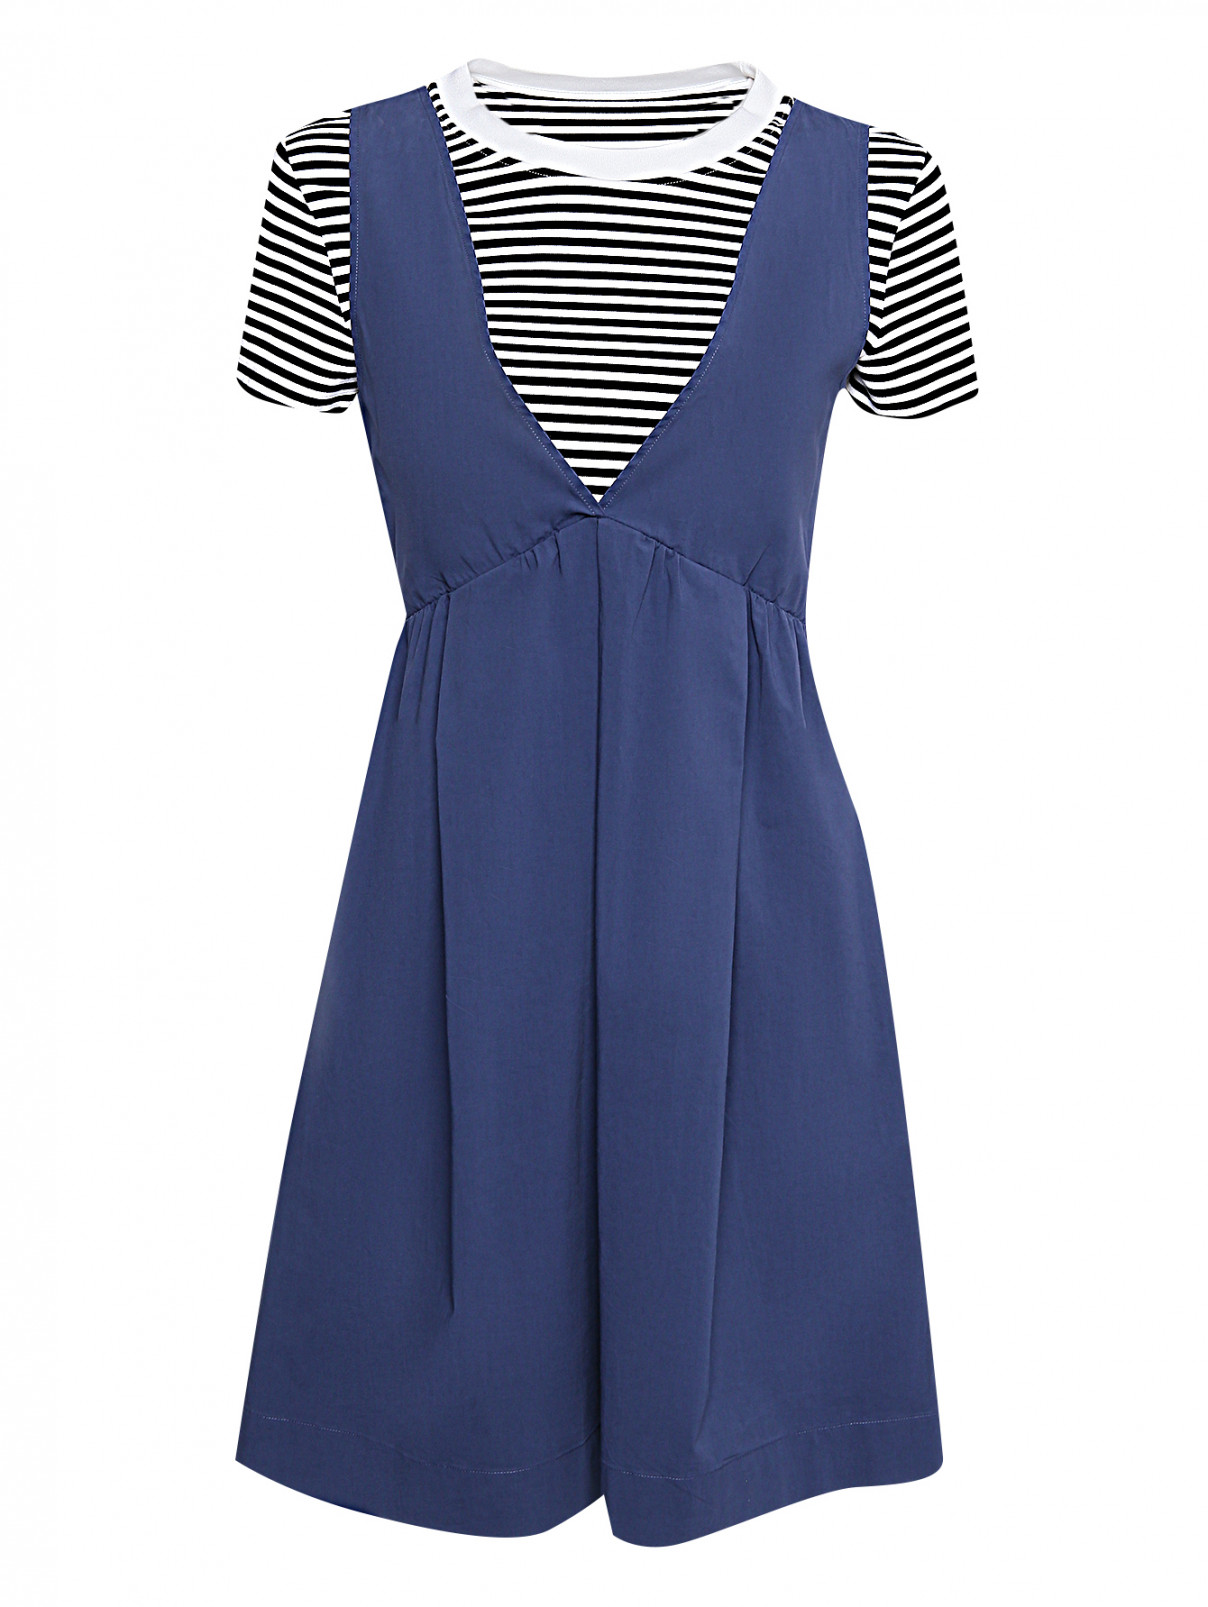 Комбинированное платье с узором полоска BOUTIQUE MOSCHINO  –  Общий вид  – Цвет:  Синий